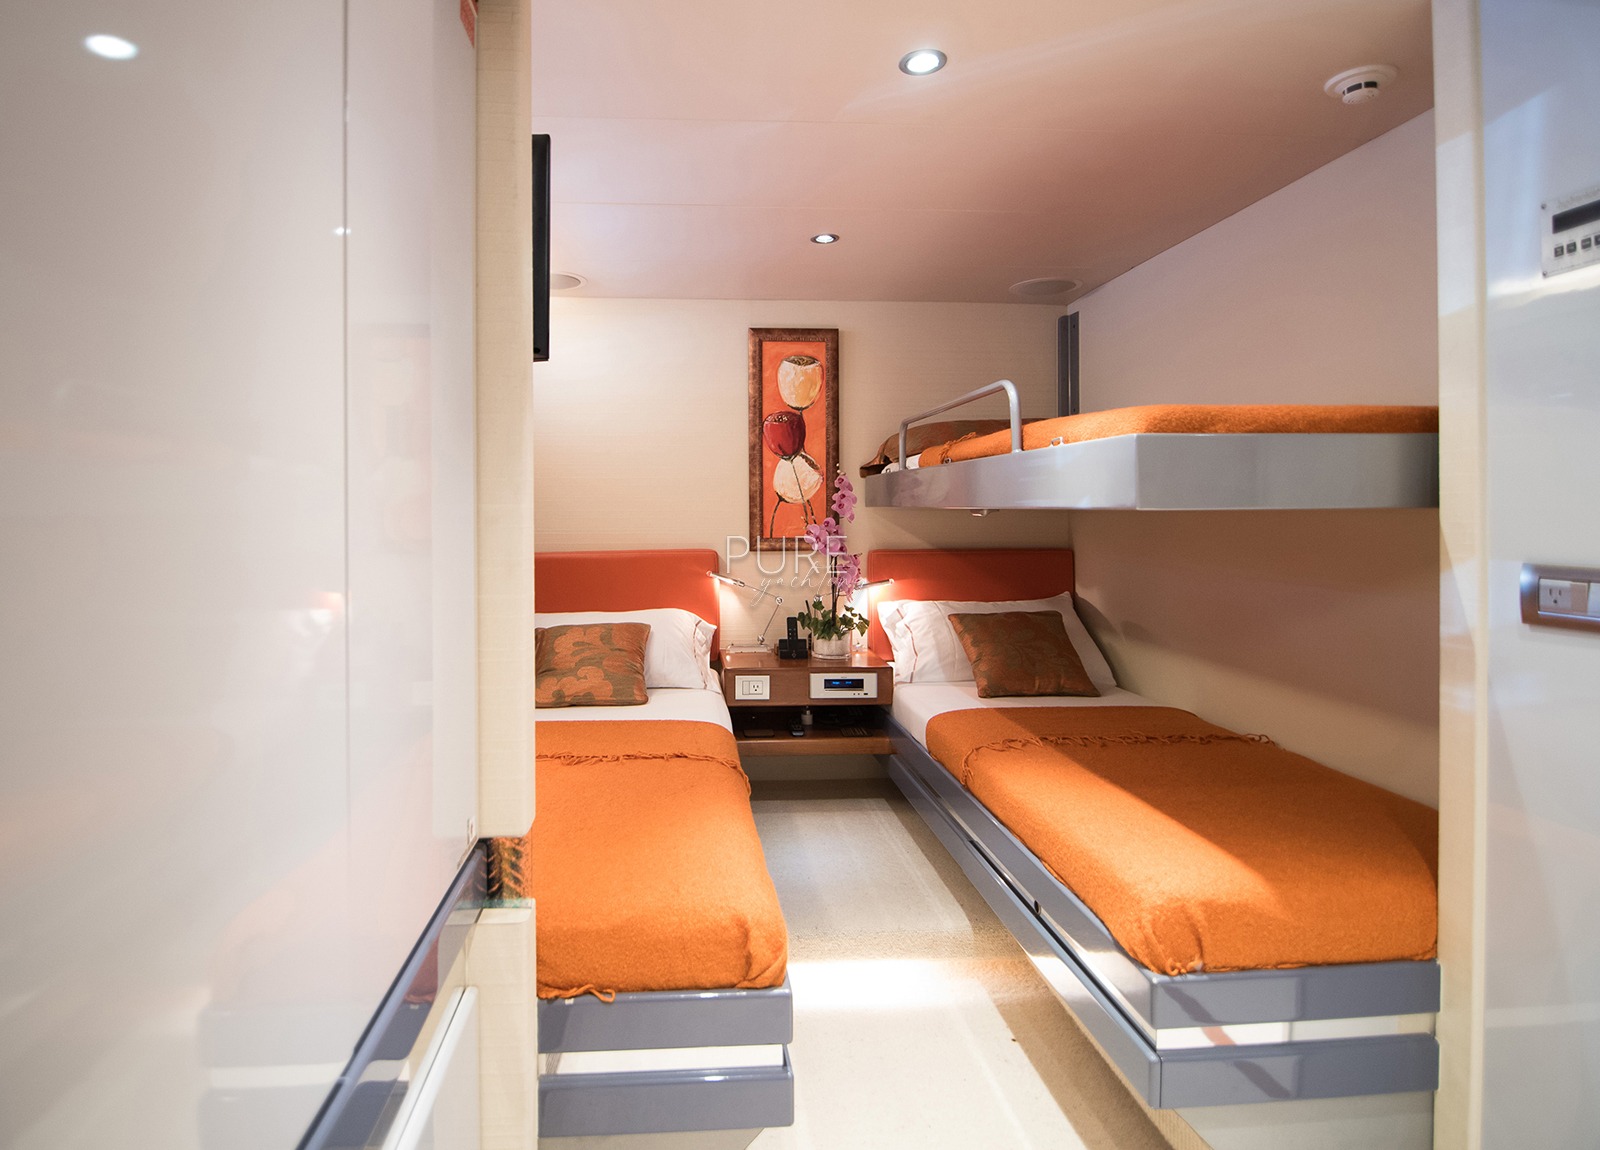 twin bed cabin luxury yacht heesen 28m heartbeat of life spain